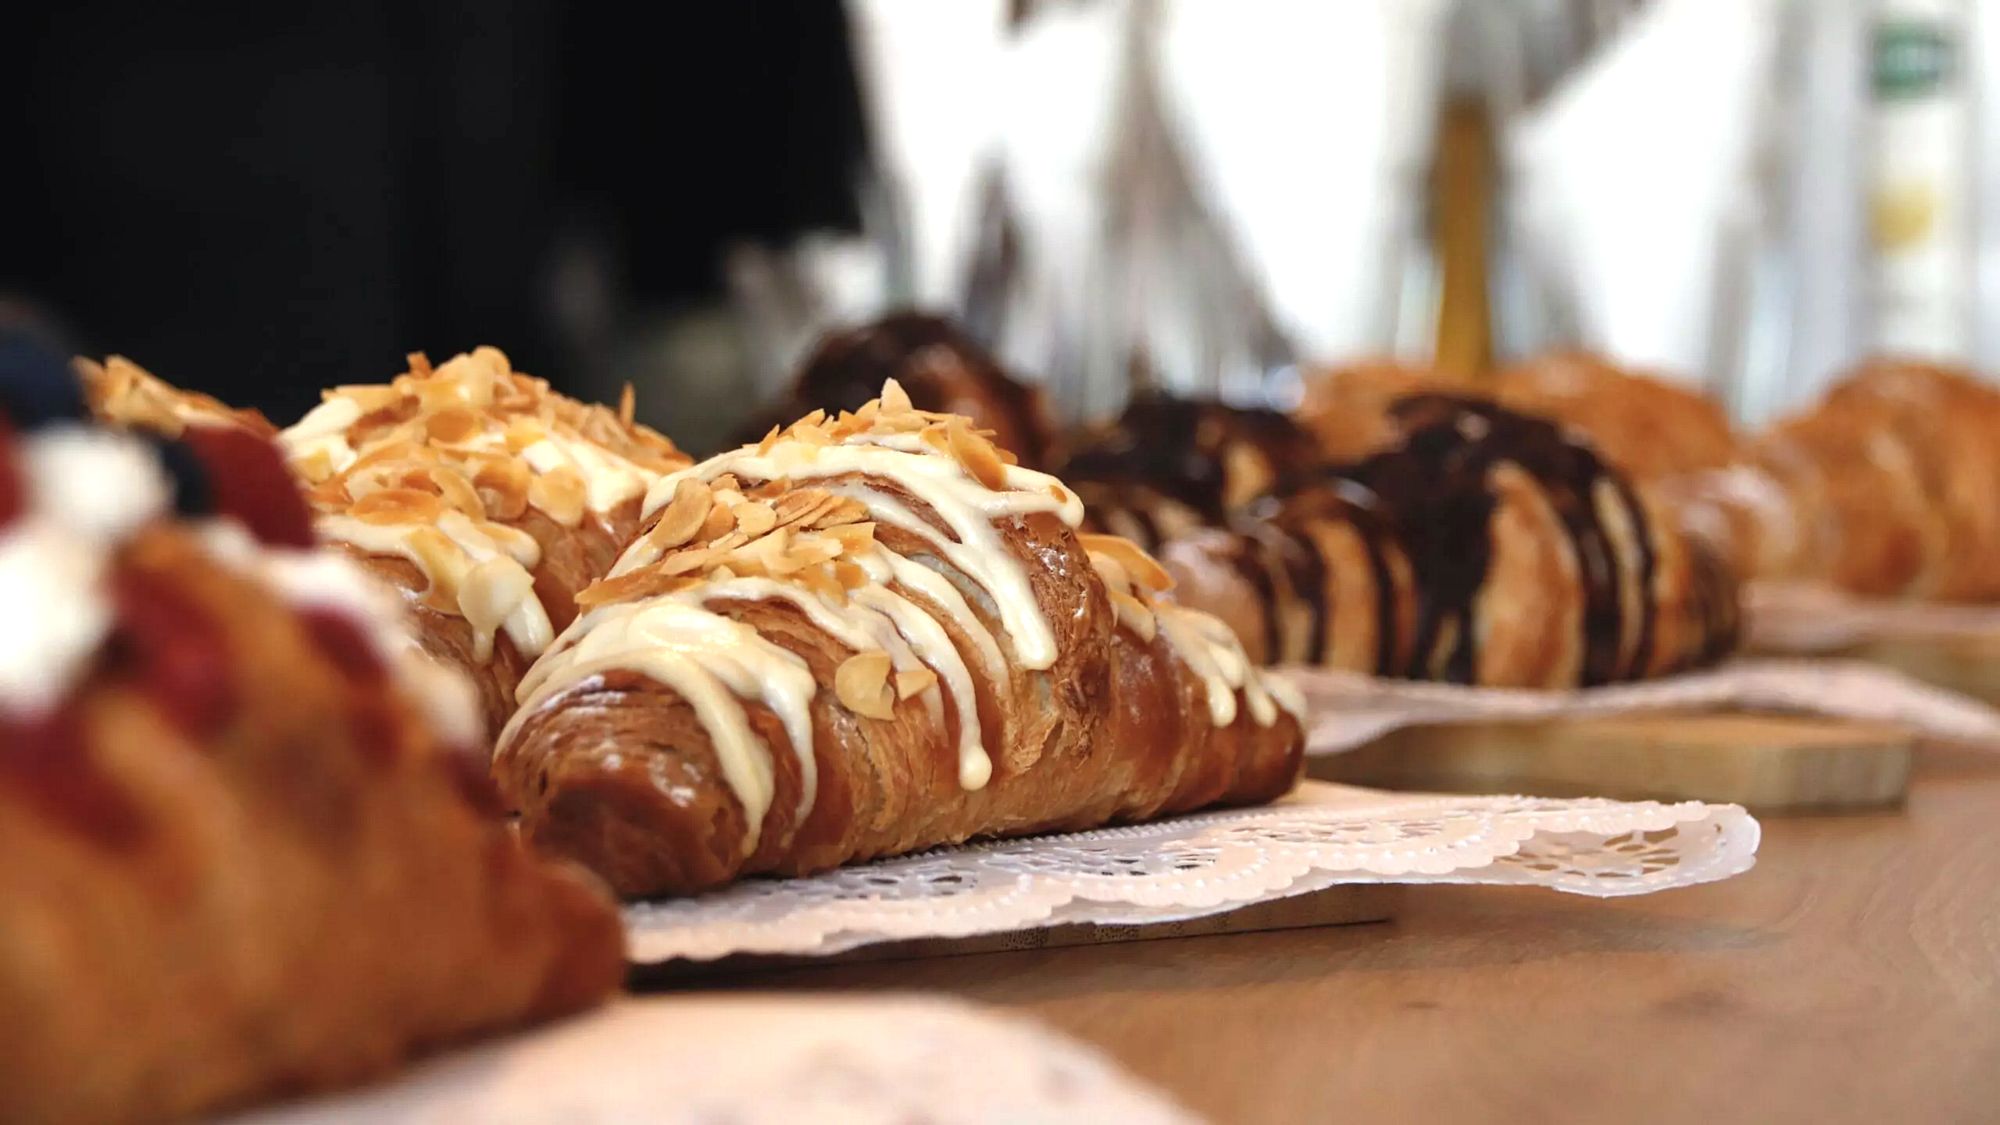 Zum Anbeißen: Süße Croissants in allen Variationen. Es gibt aber auch herzhafte Angebote. Foto: Florian Varga